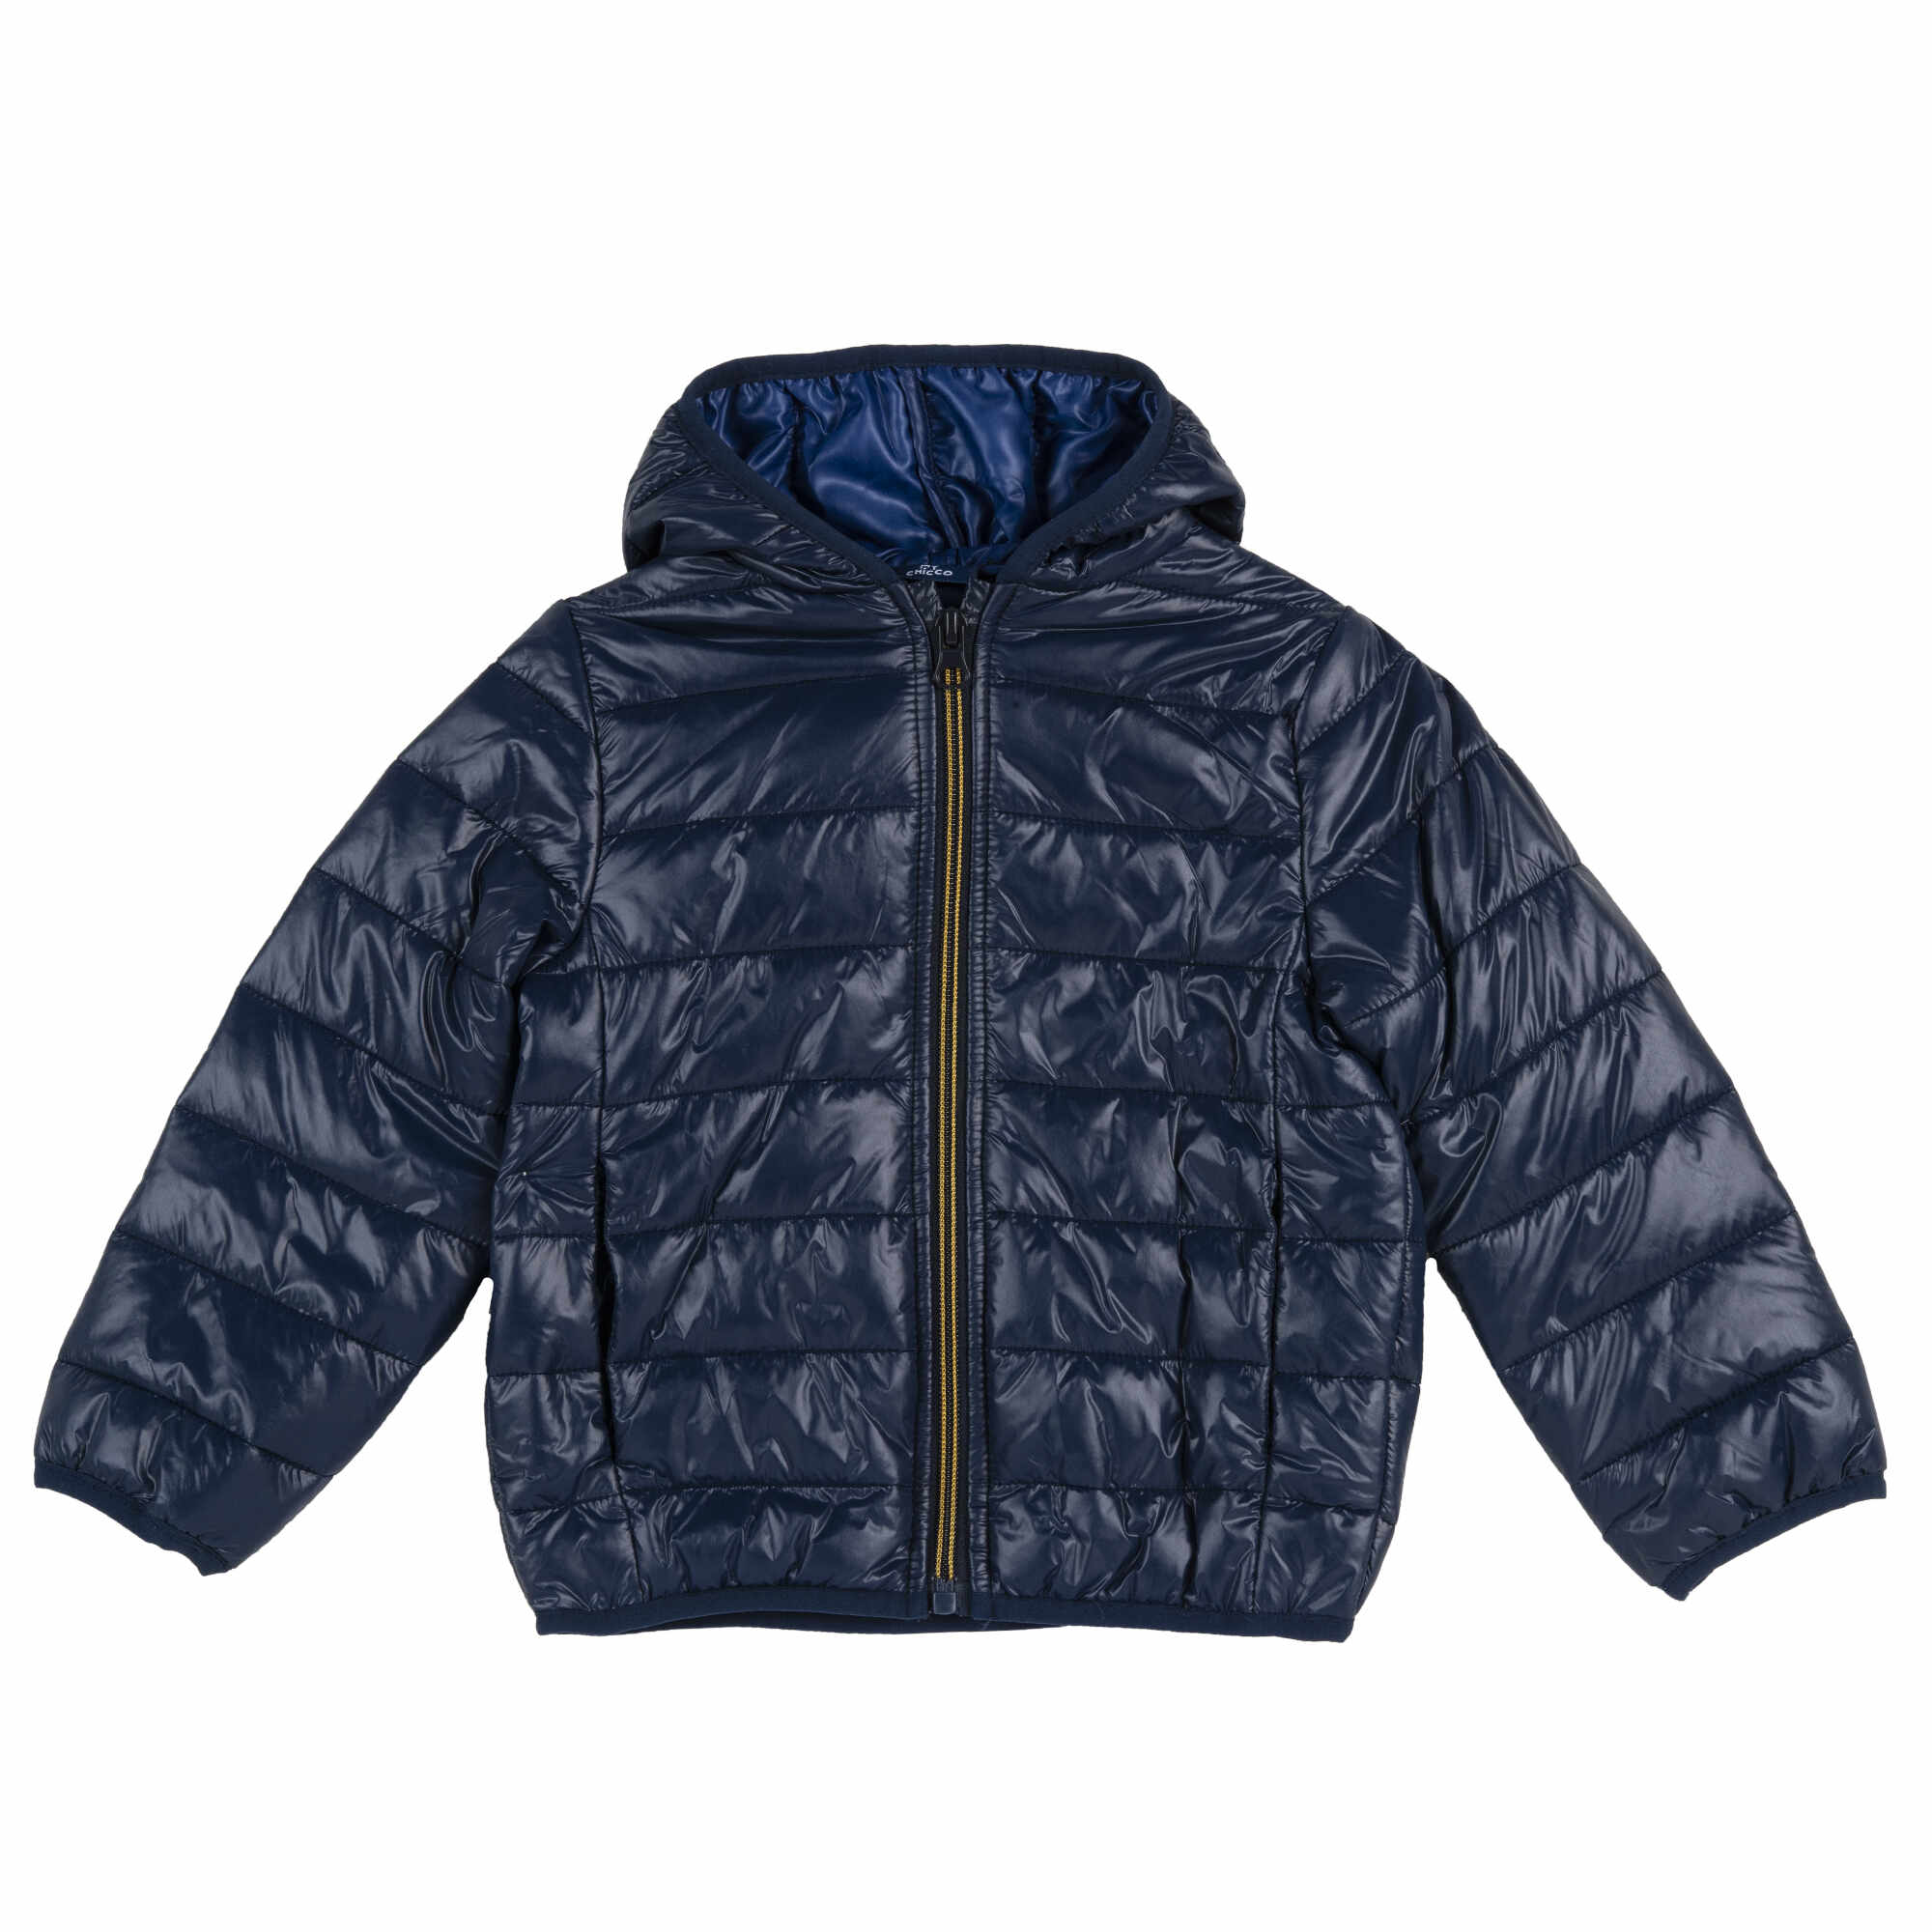 Jacheta copii matlasata Chicco, gluga, albastru inchis, 87559